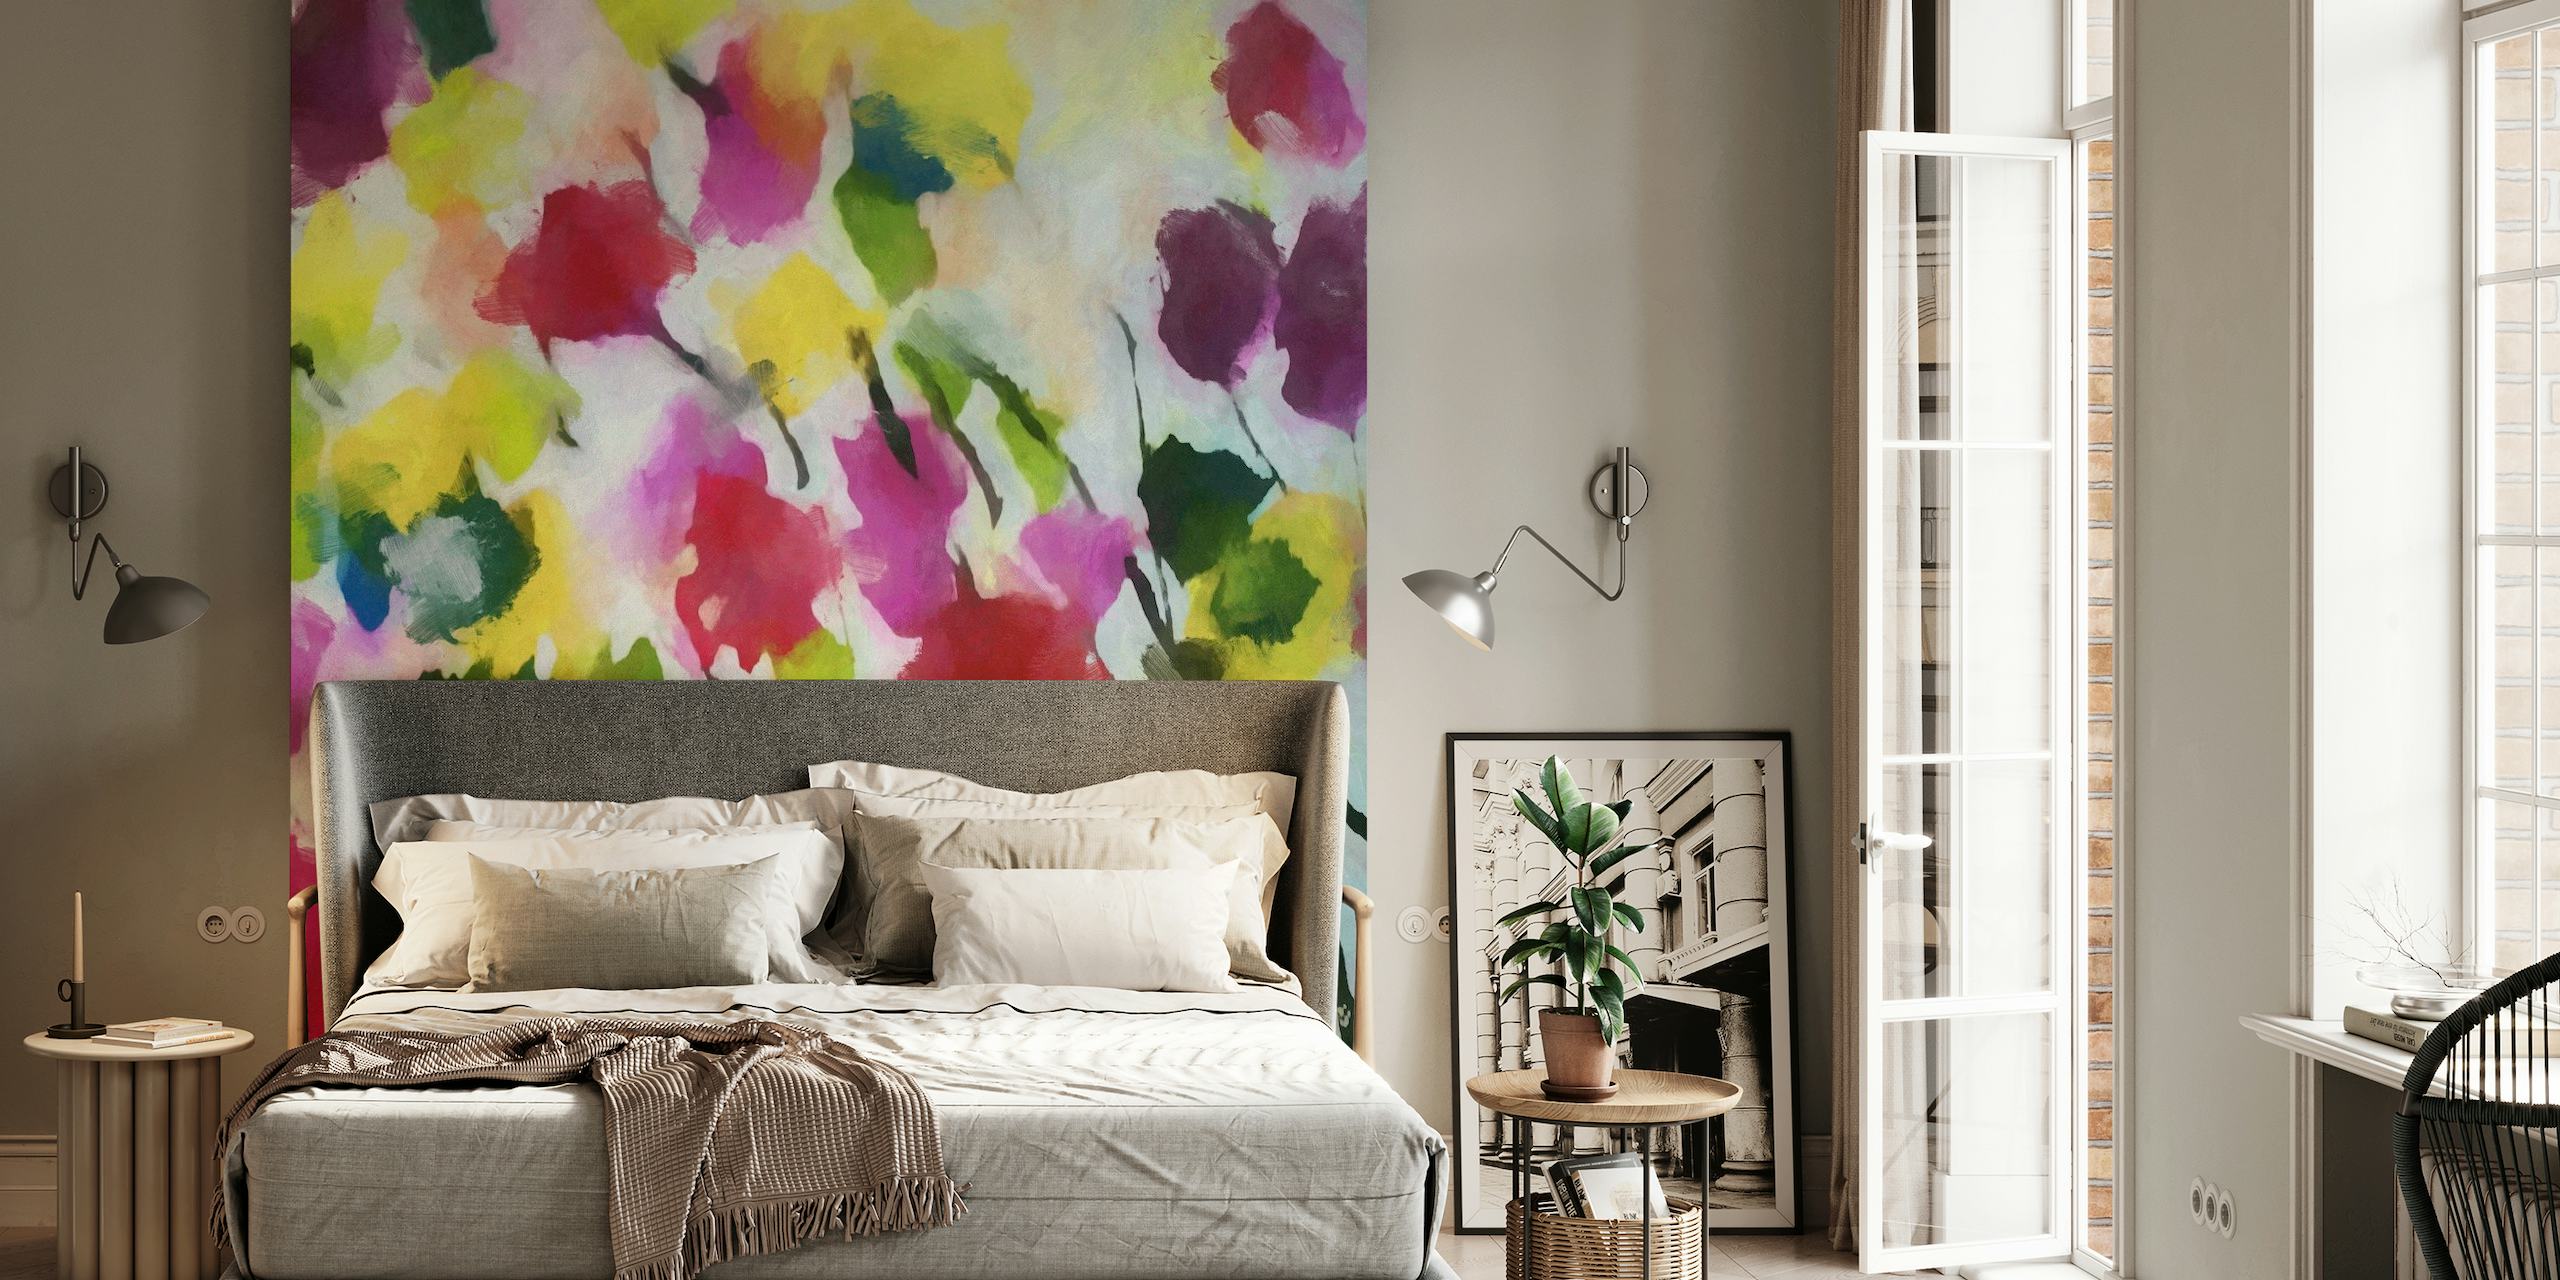 Värikäs kukkainen akvarellityylinen seinämaalaus, jossa on vaaleanpunaisia, keltaisia ja vihreitä kukkia